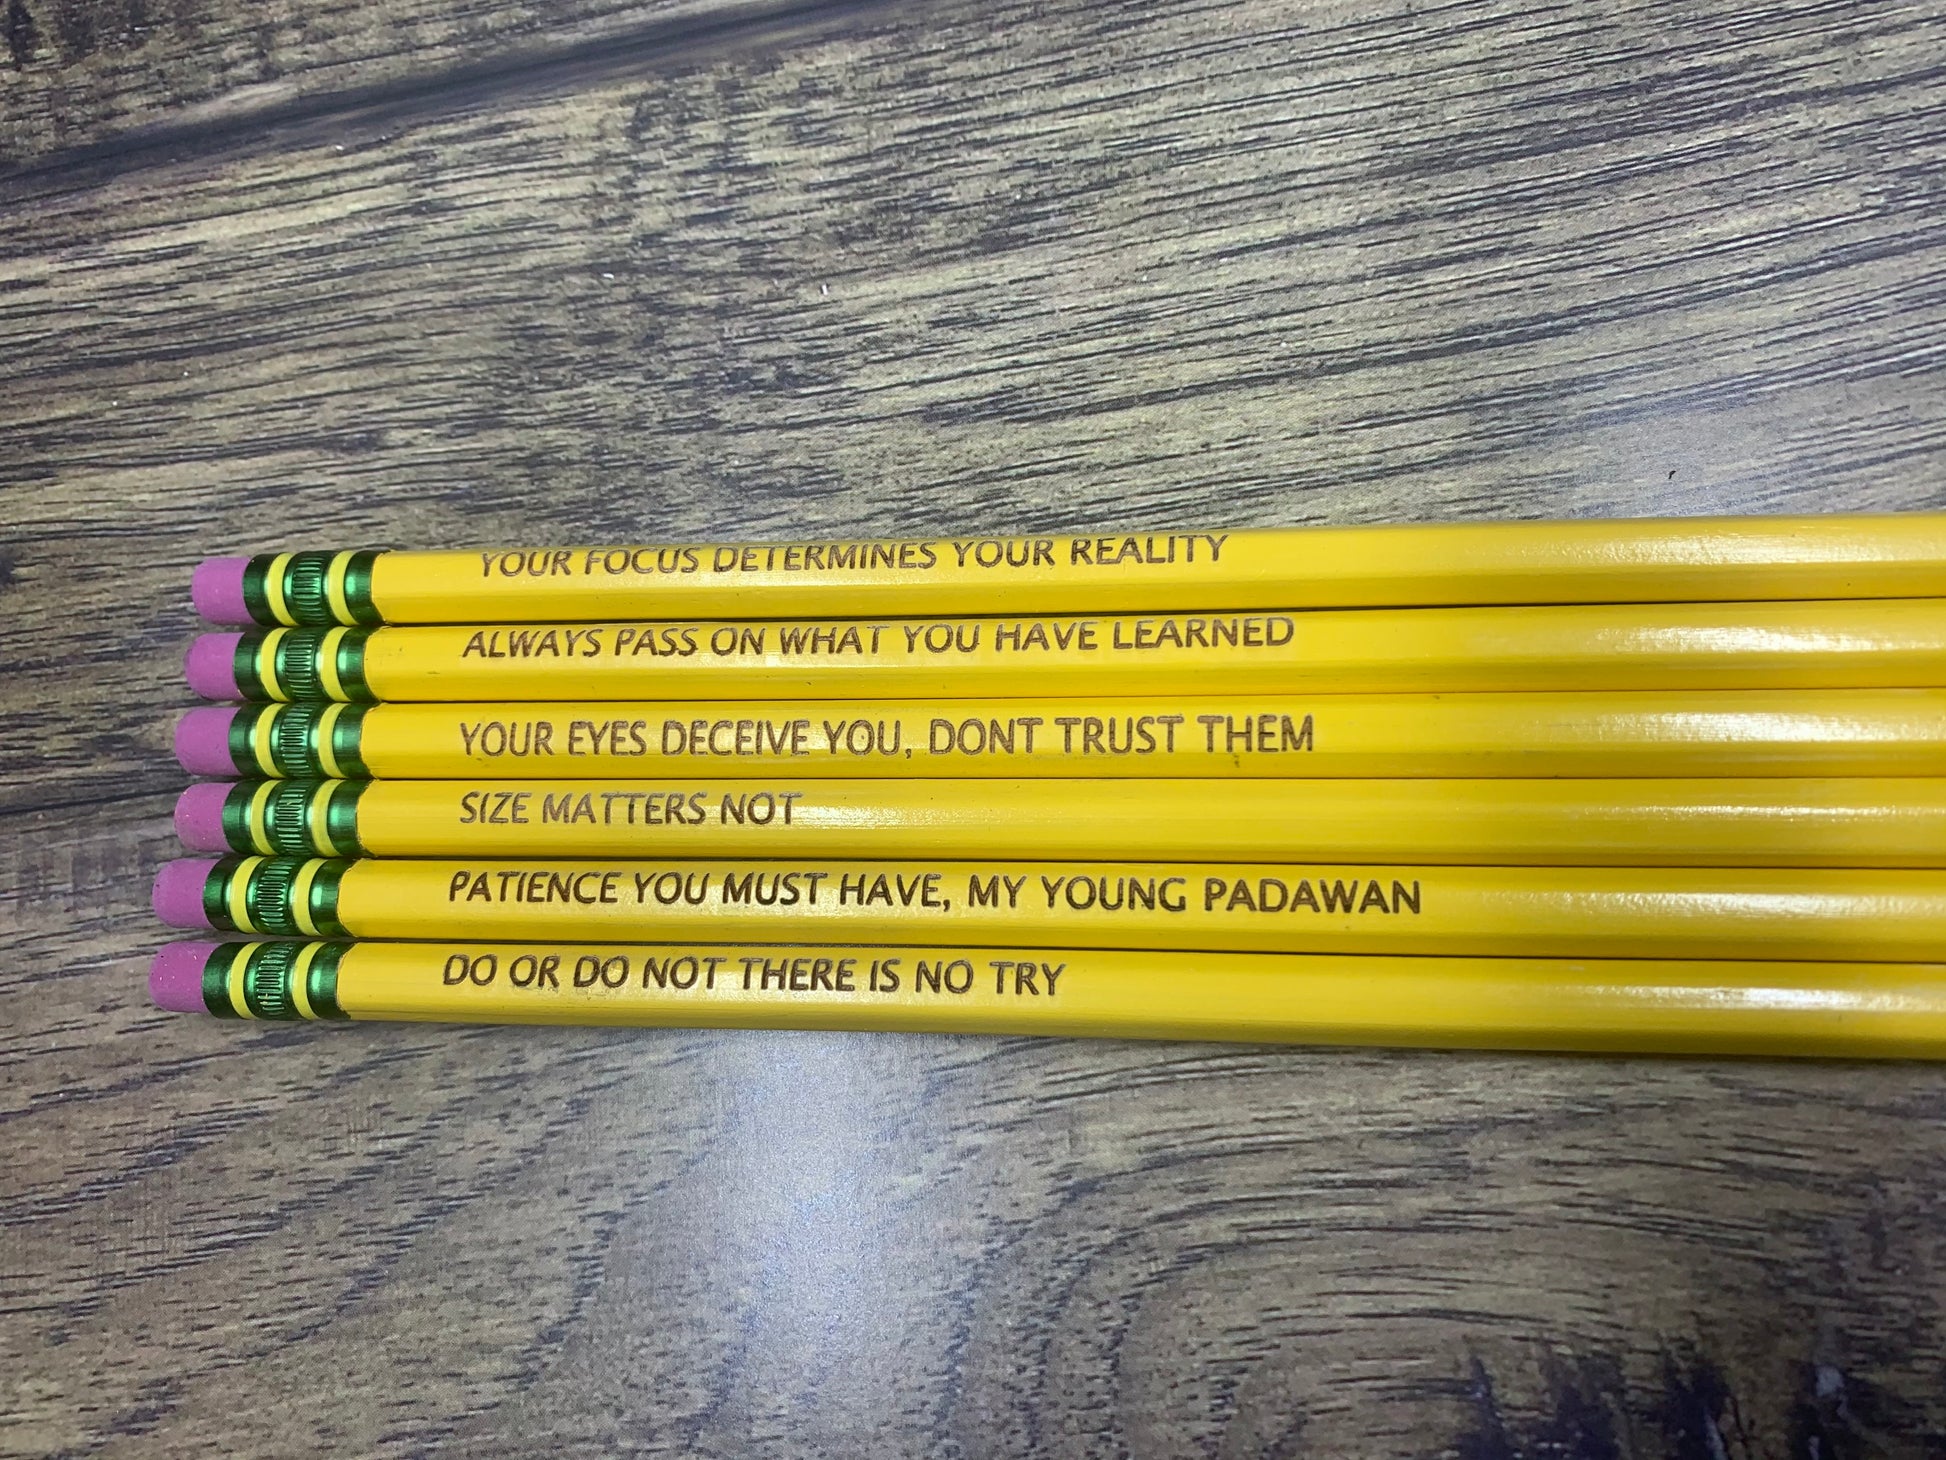 Personalized #2 pencils, Noir pencils, Ticonderoga engraved